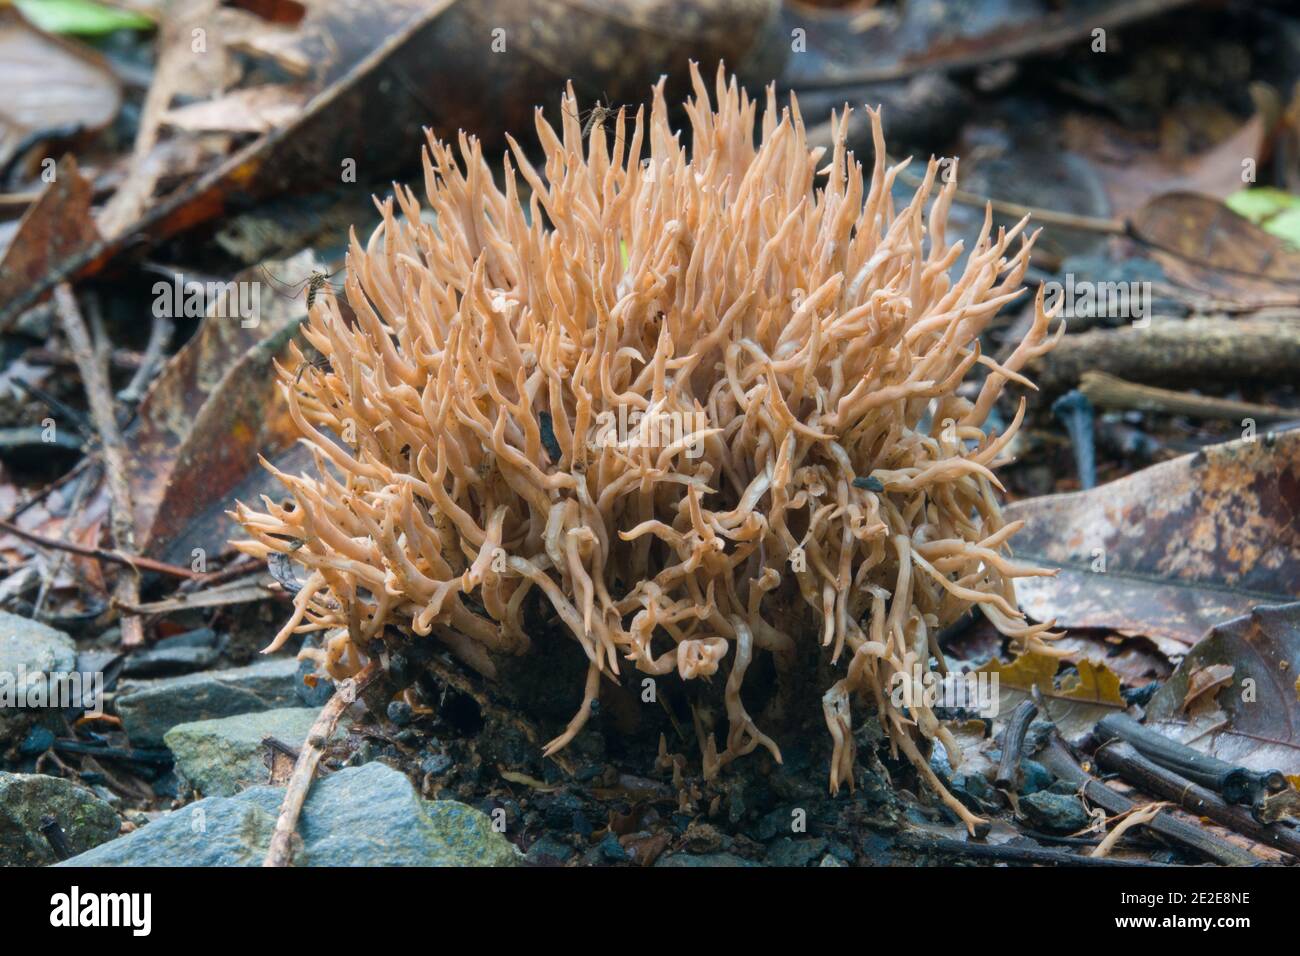 Un champignon de corail (espèce Ramaria) photographié à Diwan, parc national de Daintree, Queensland, Australie. Banque D'Images